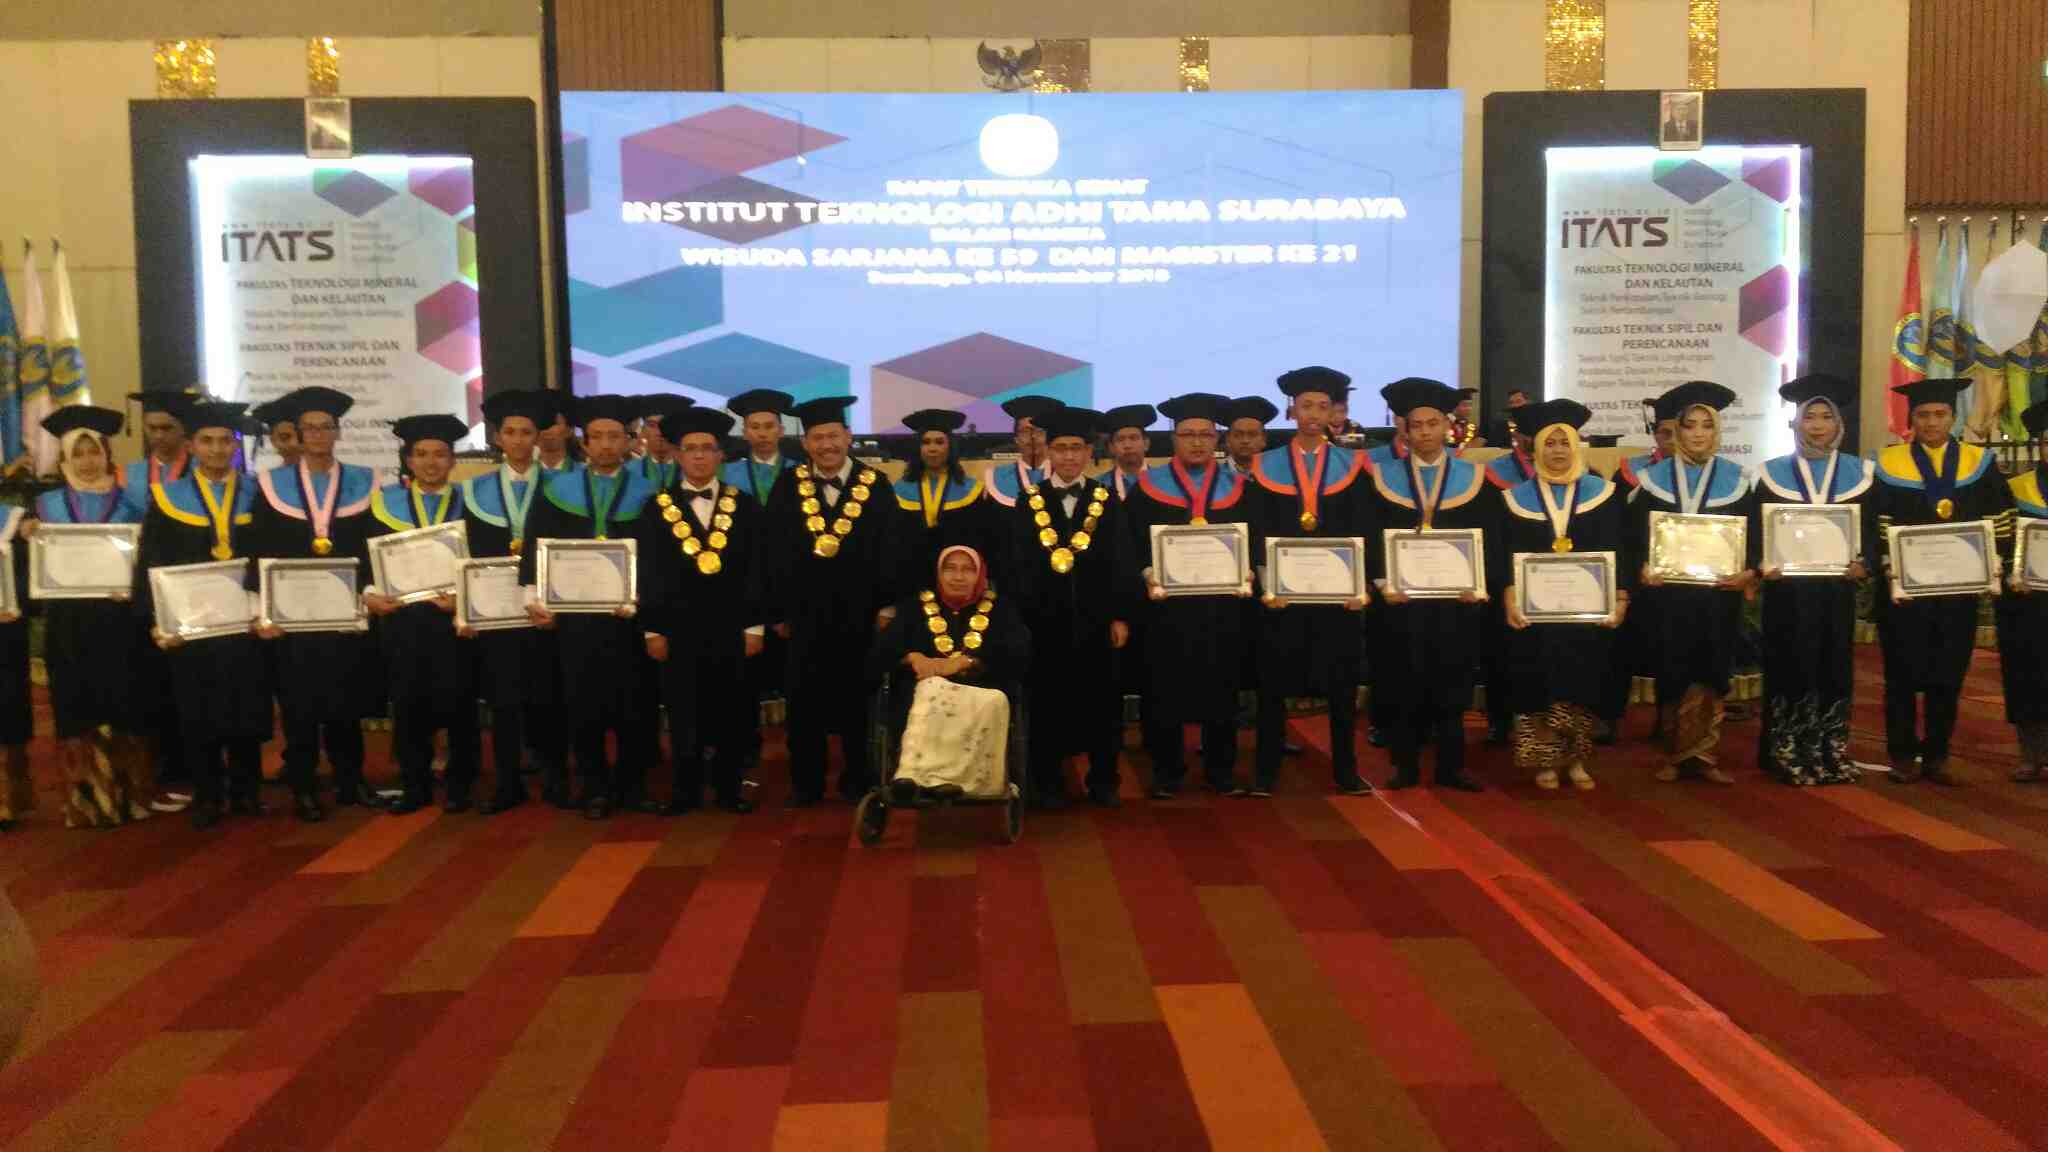 Daftar Lengkap Akreditasi Kampus ITATS Terbaru 2019 Institut Teknologi Adhi Tama Surabaya.